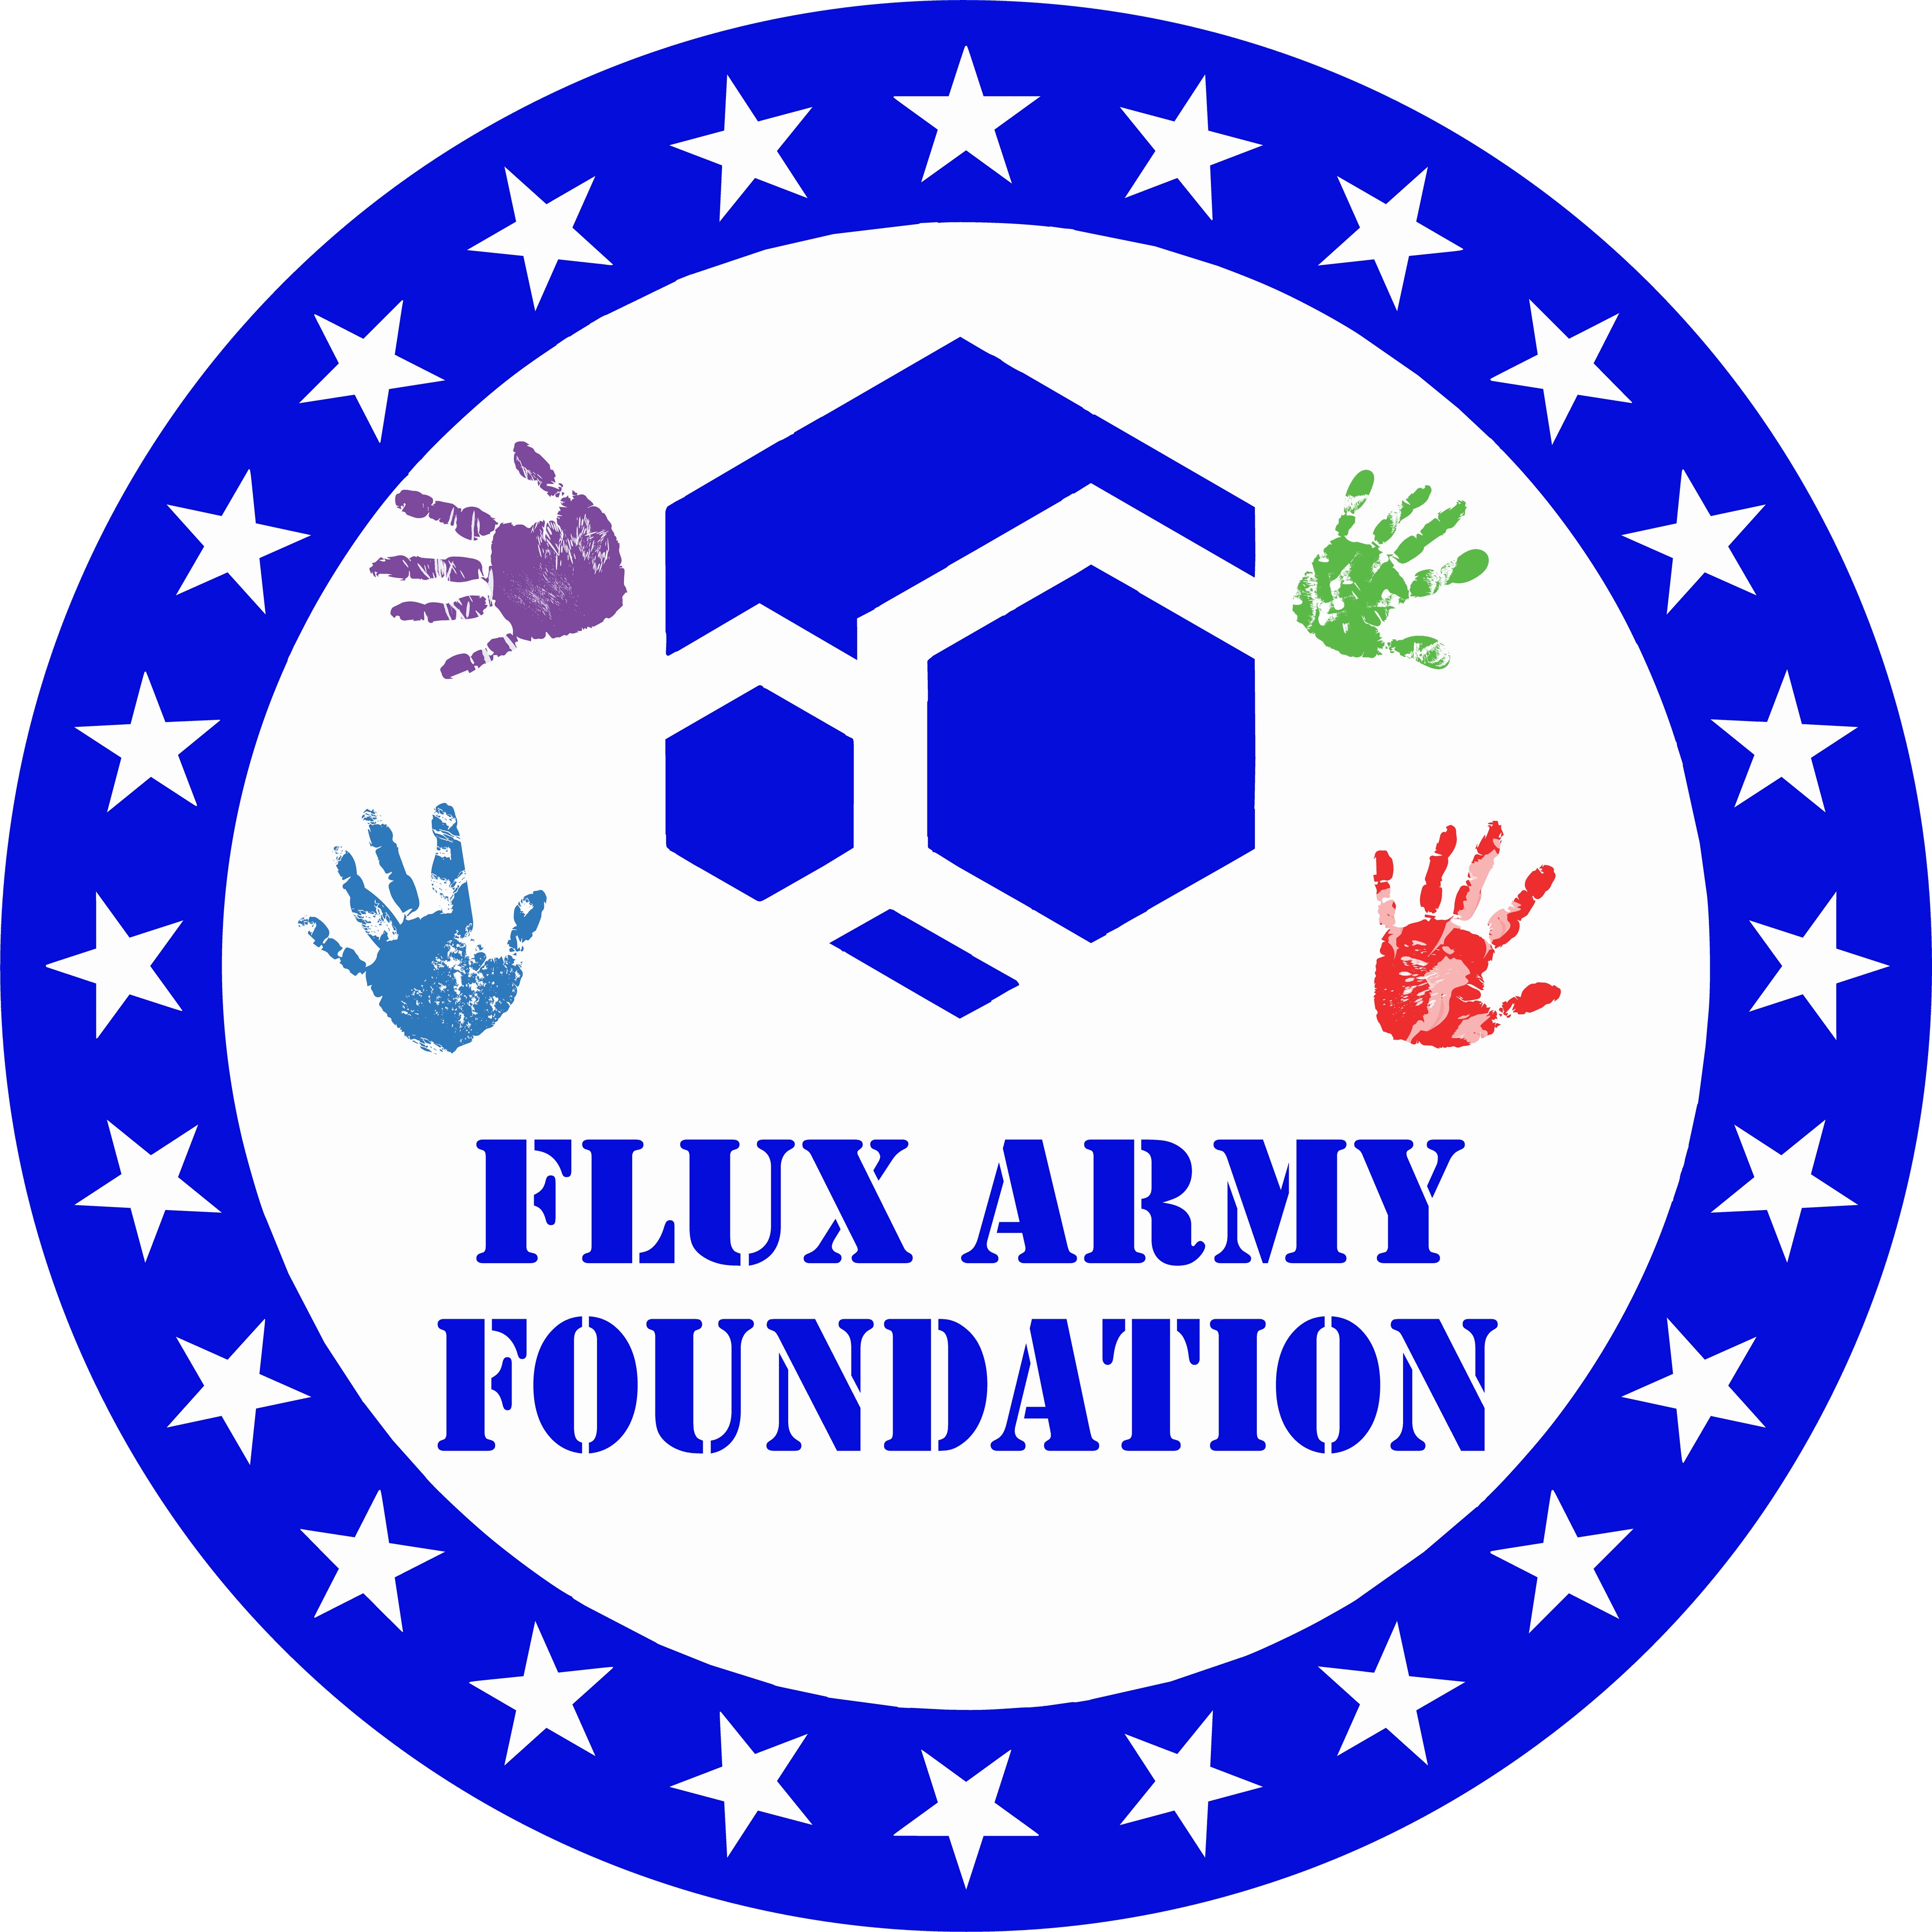 Flux_Army_Foundation